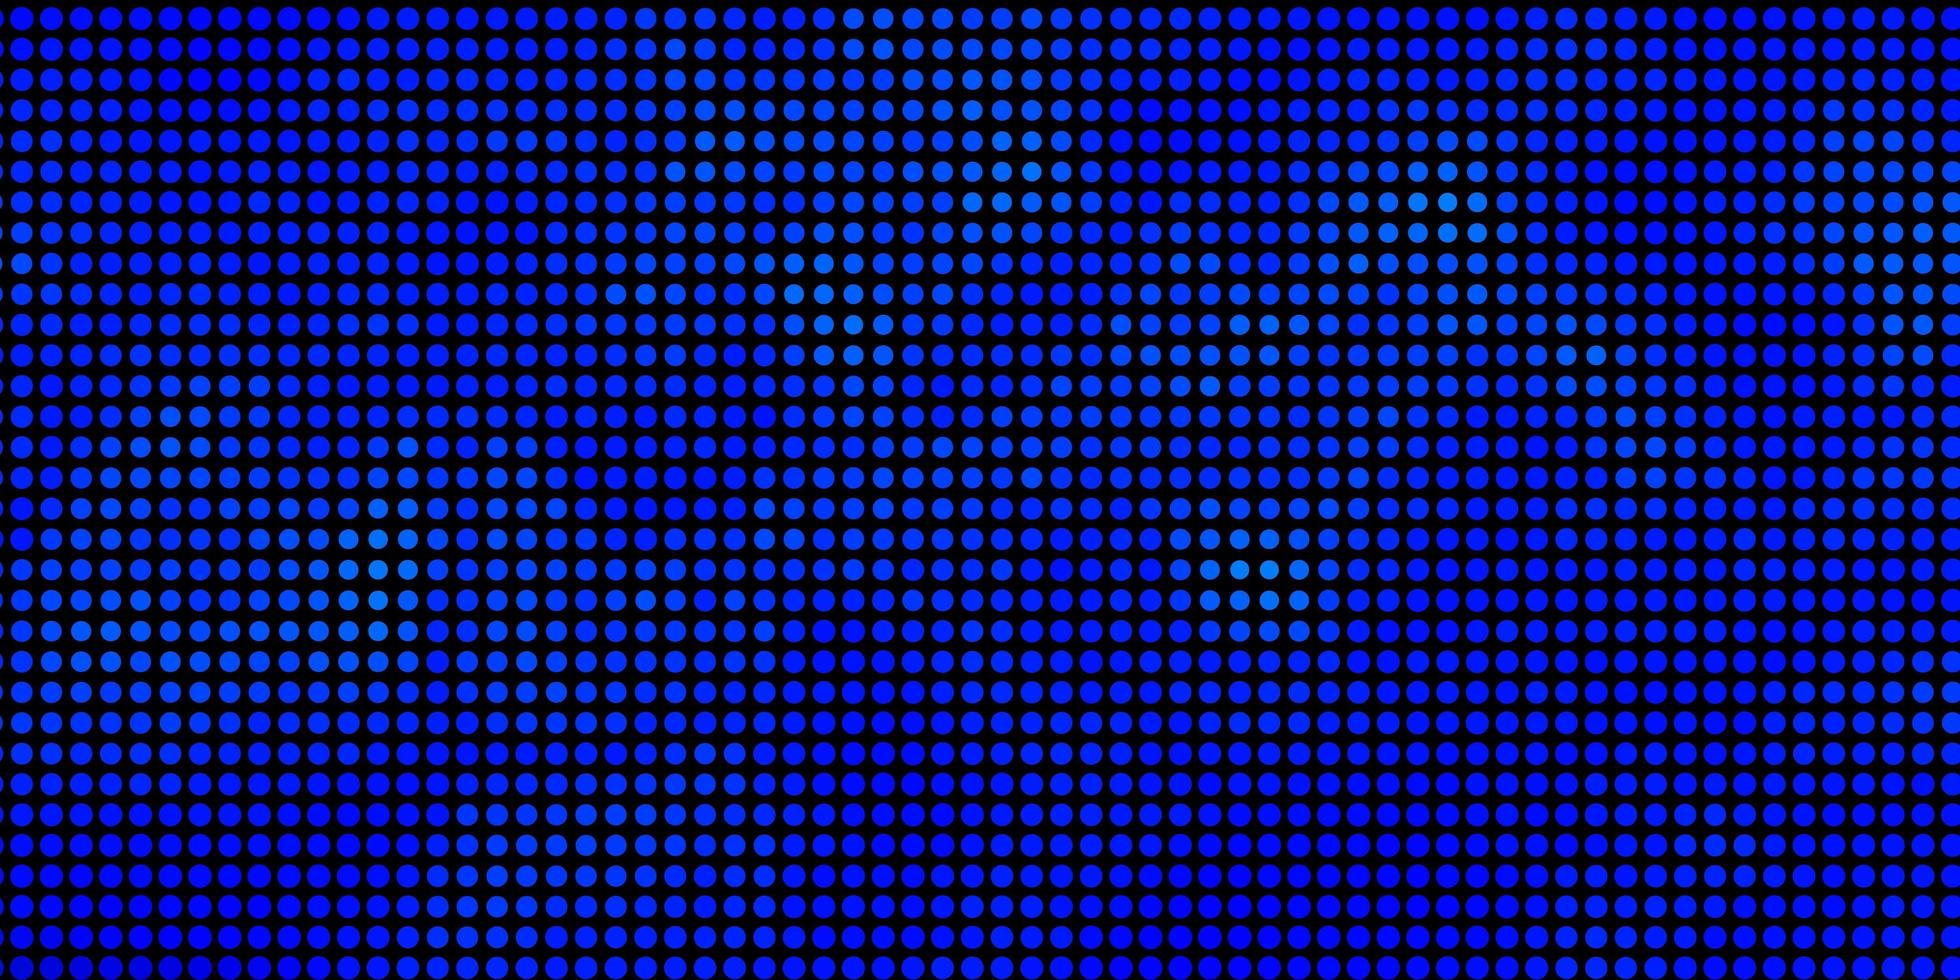 pano de fundo azul claro do vetor com pontos. glitter ilustração abstrata com gotas coloridas. design para seus comerciais.